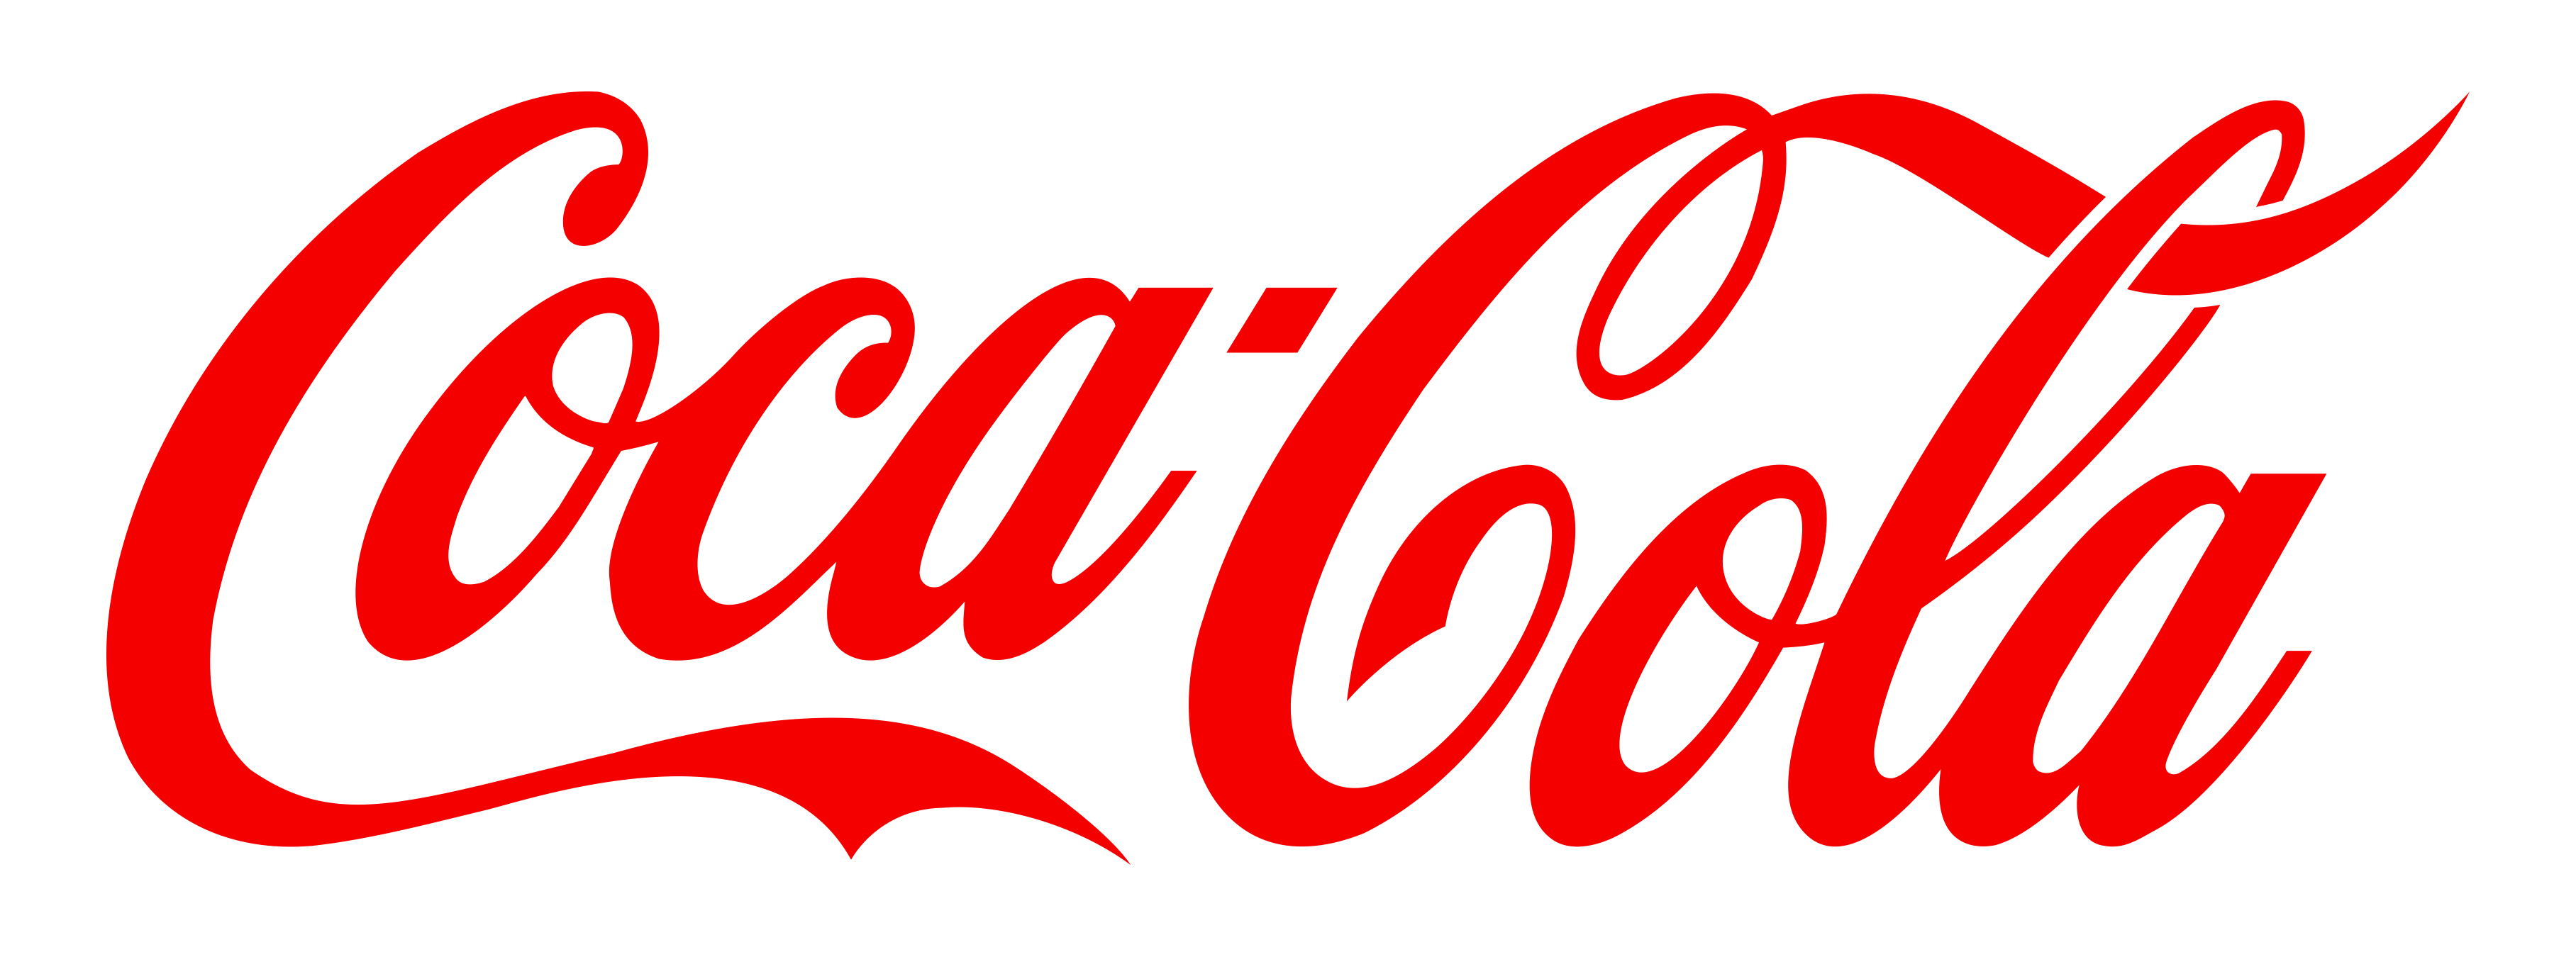 Coca Cola PNG - 8141